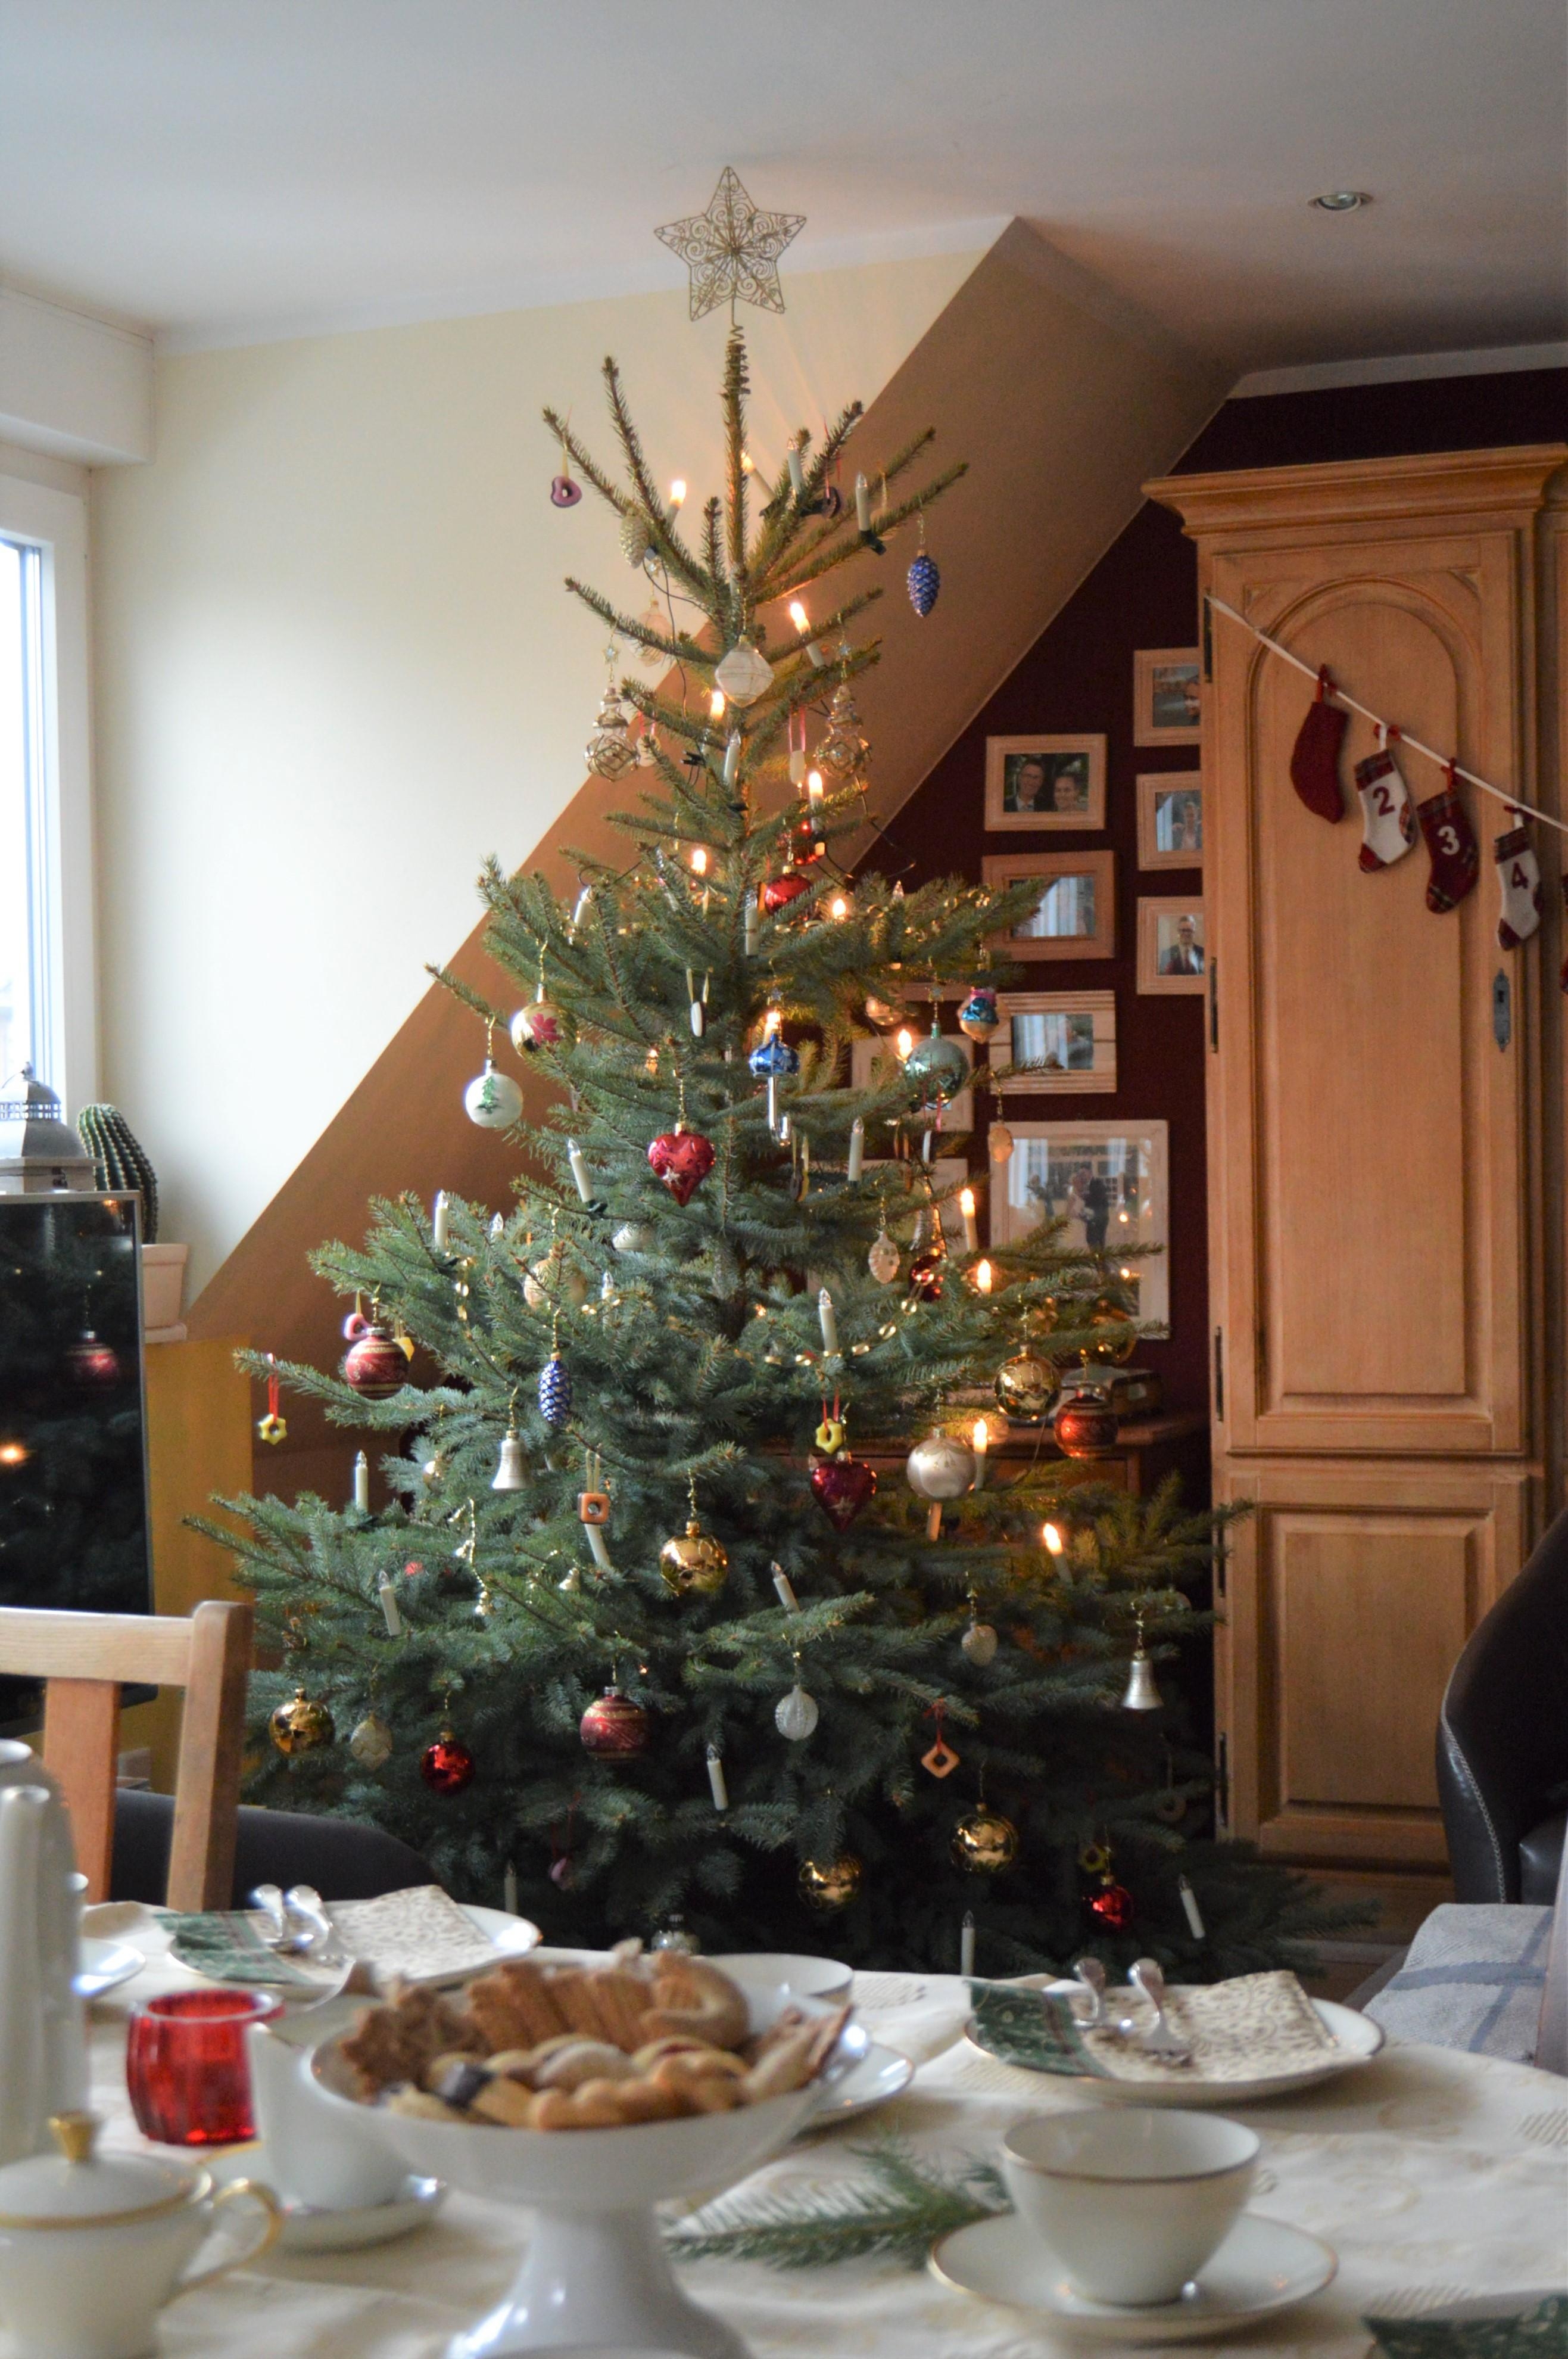 Viele schmeißen ihren #Weihnachtsbaum nach #Neujahr sofort weg. Habt ihr euren noch? #Weihnachtsbaum #deko #heimatliebe